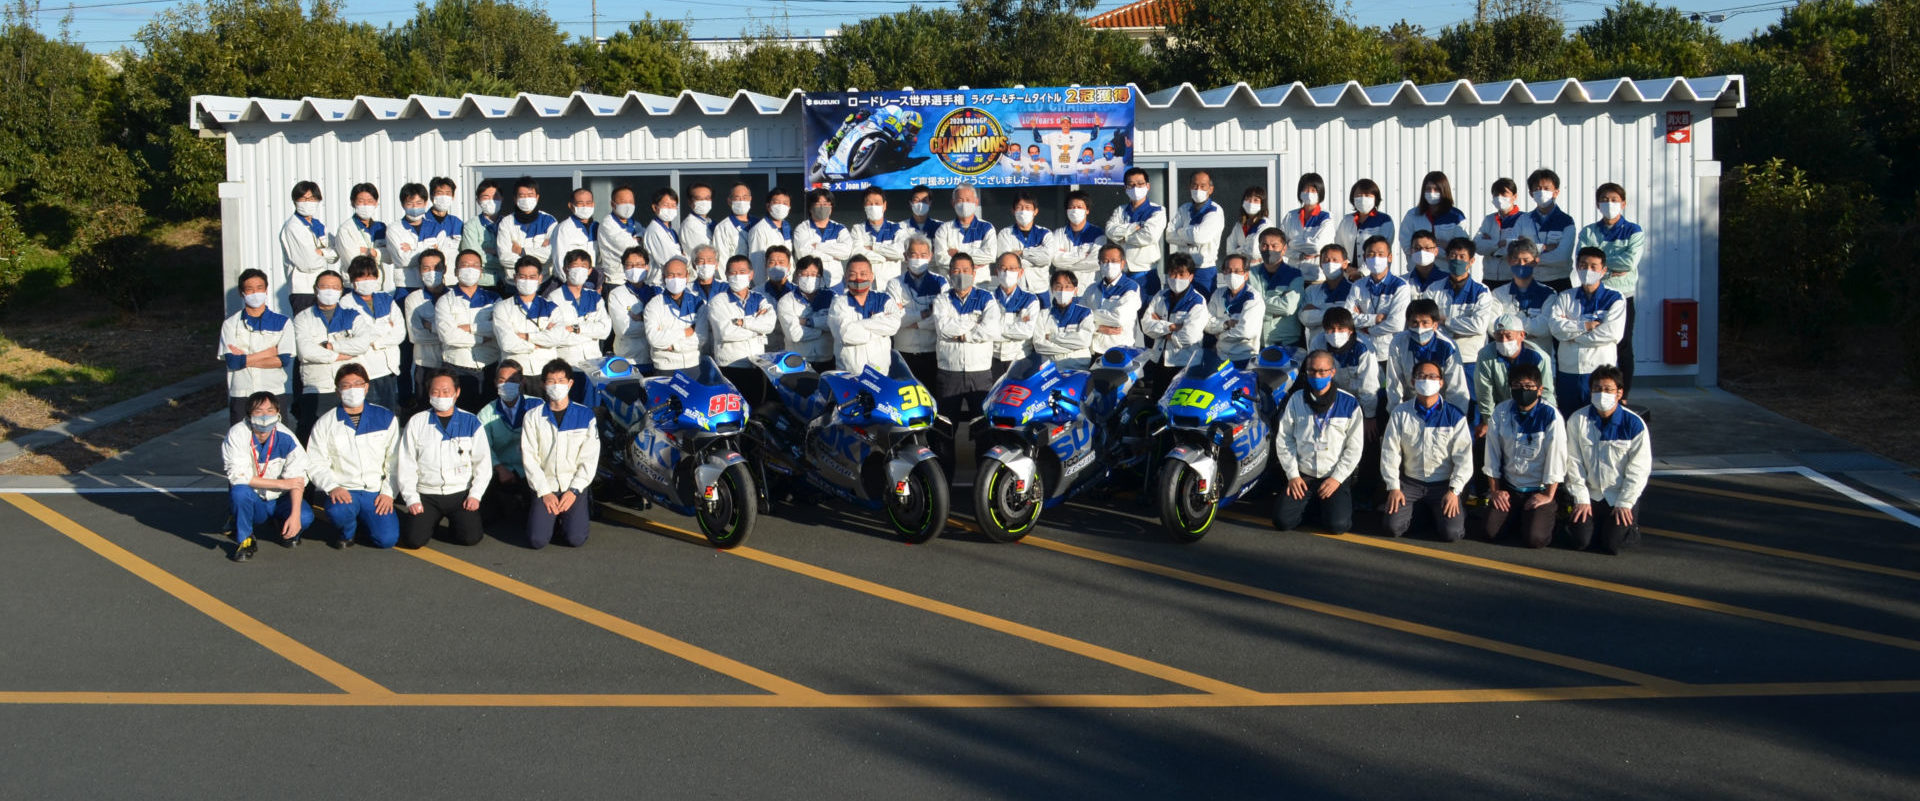 Suzuki Racing staff outside a support building at Suzuki's test track in Japan. Photo courtesy Team Suzuki Press Office.